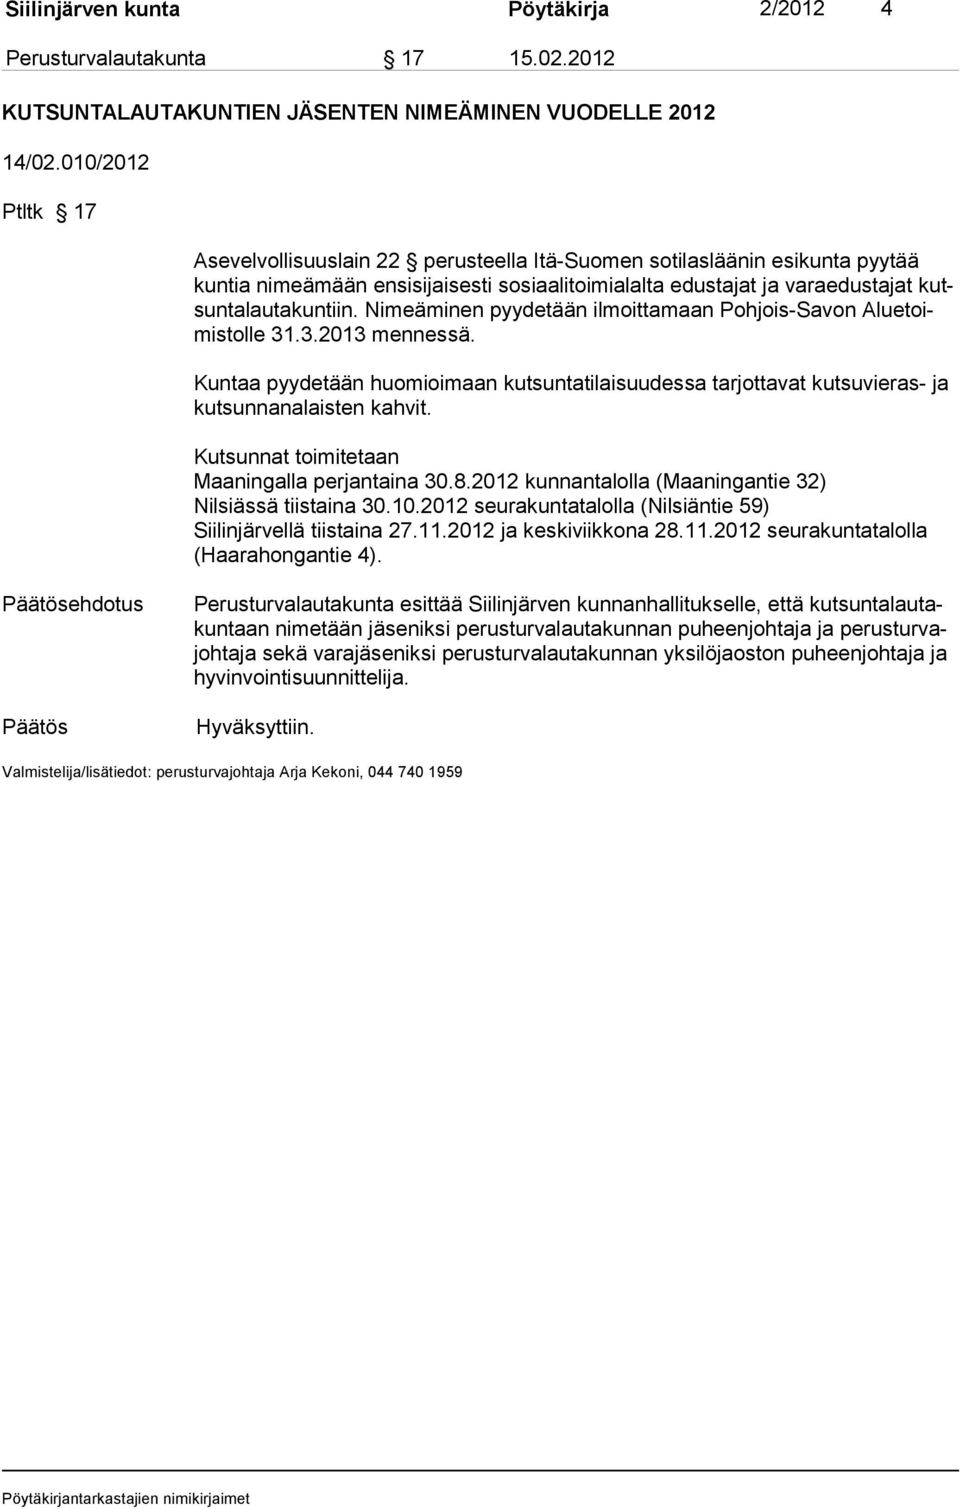 Nimeäminen pyydetään ilmoittamaan Pohjois-Savon Aluetoimistolle 31.3.2013 mennessä. Kuntaa pyydetään huomioimaan kutsuntatilaisuudessa tarjottavat kutsuvieras- ja kutsunnanalaisten kahvit.